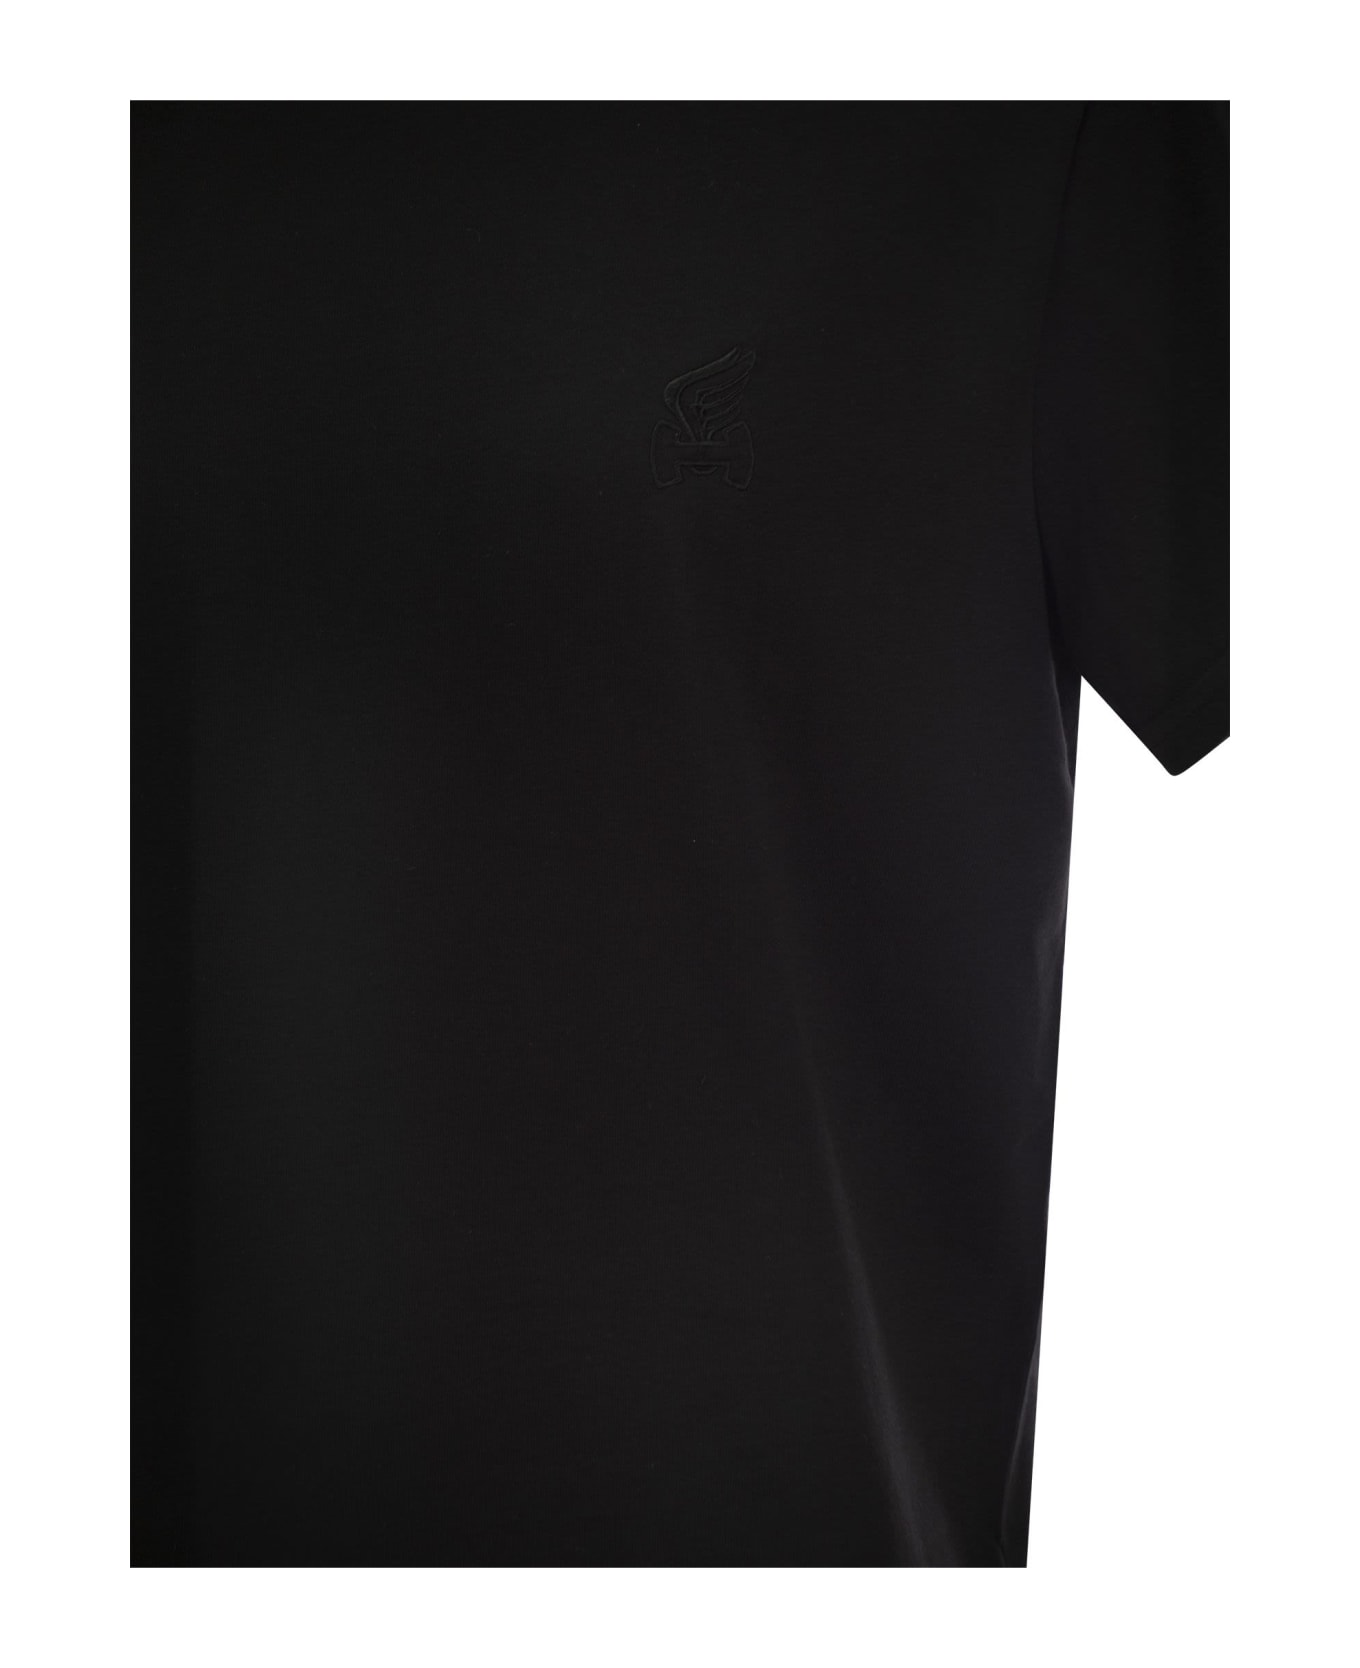 Hogan Cotton Jersey T-shirt - Black